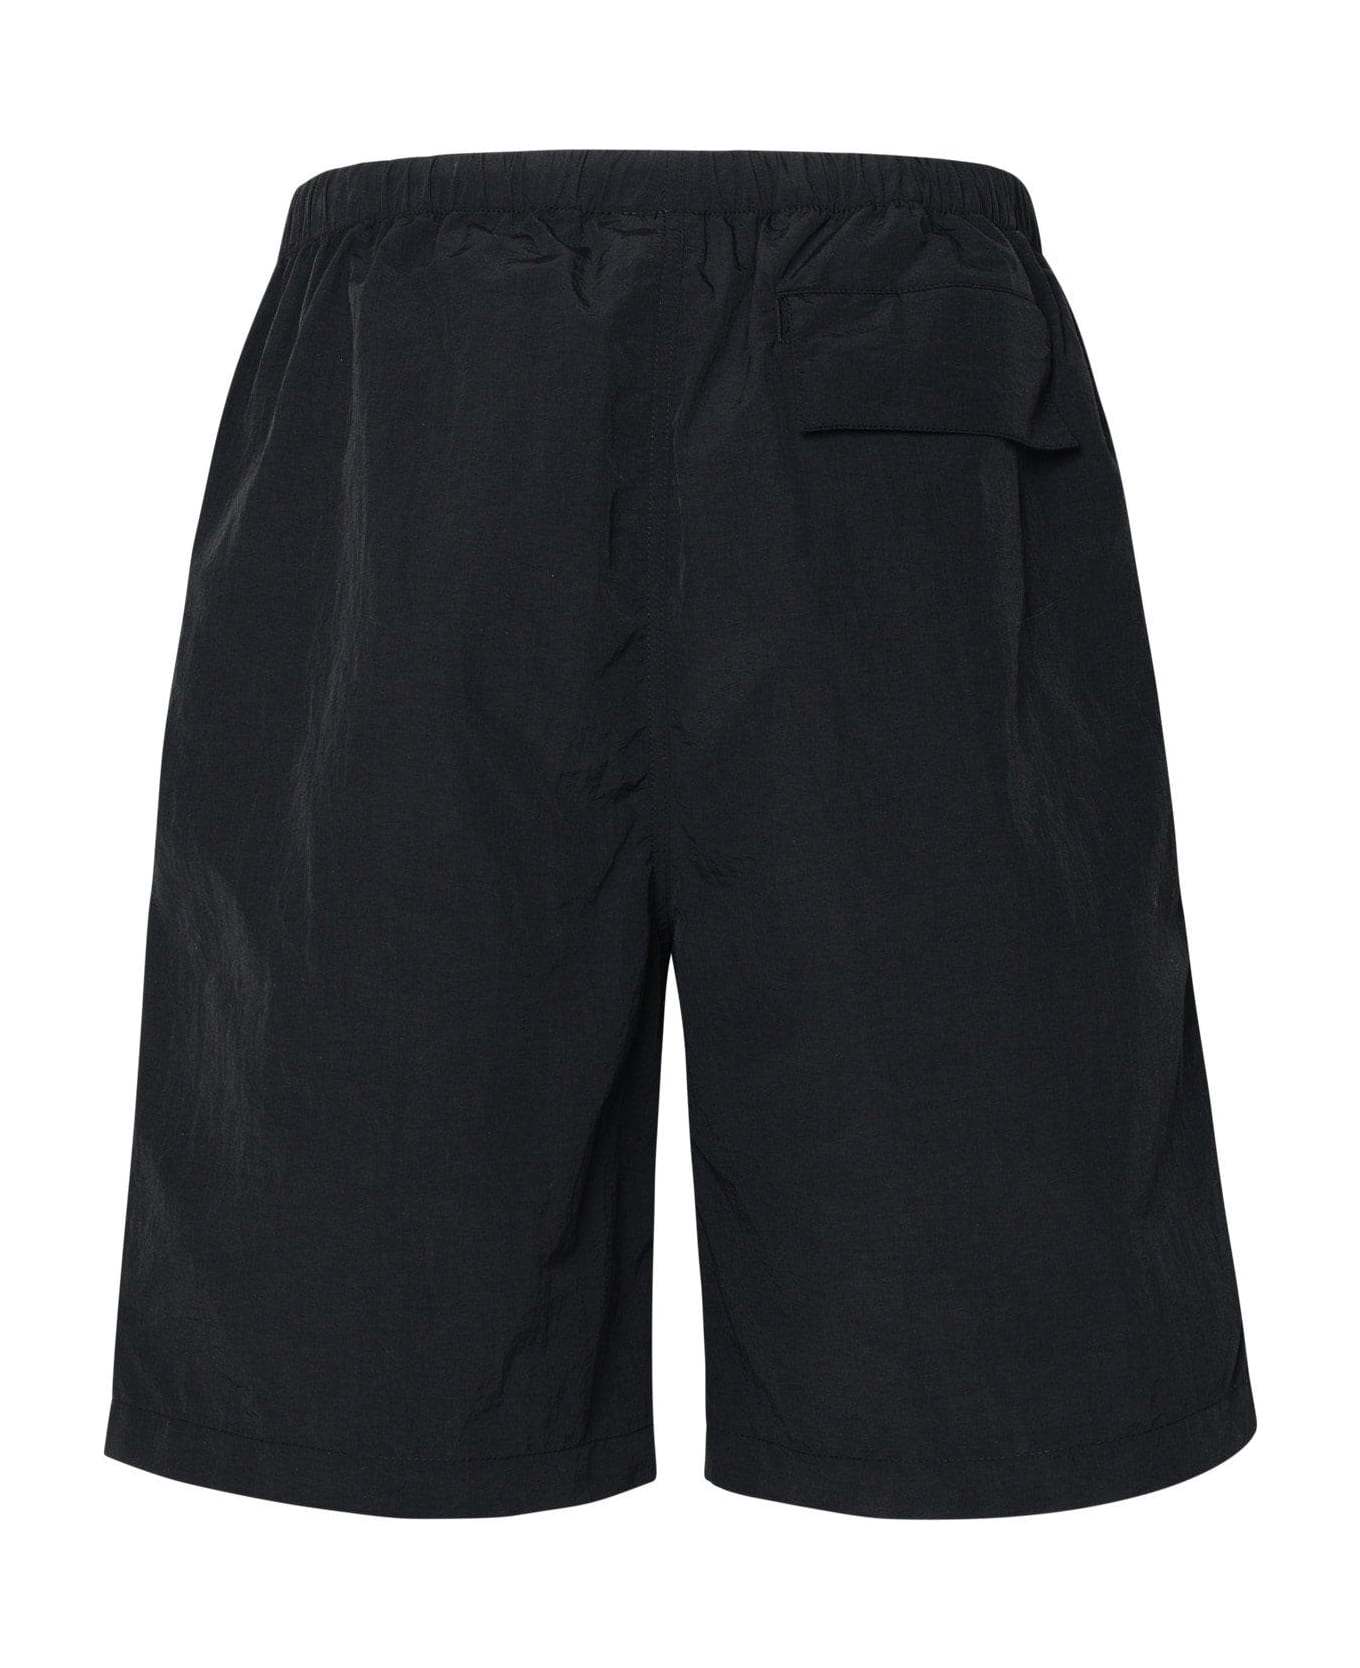 Marcelo Burlon Cross Embroidered Bermuda Shorts - Black ショートパンツ